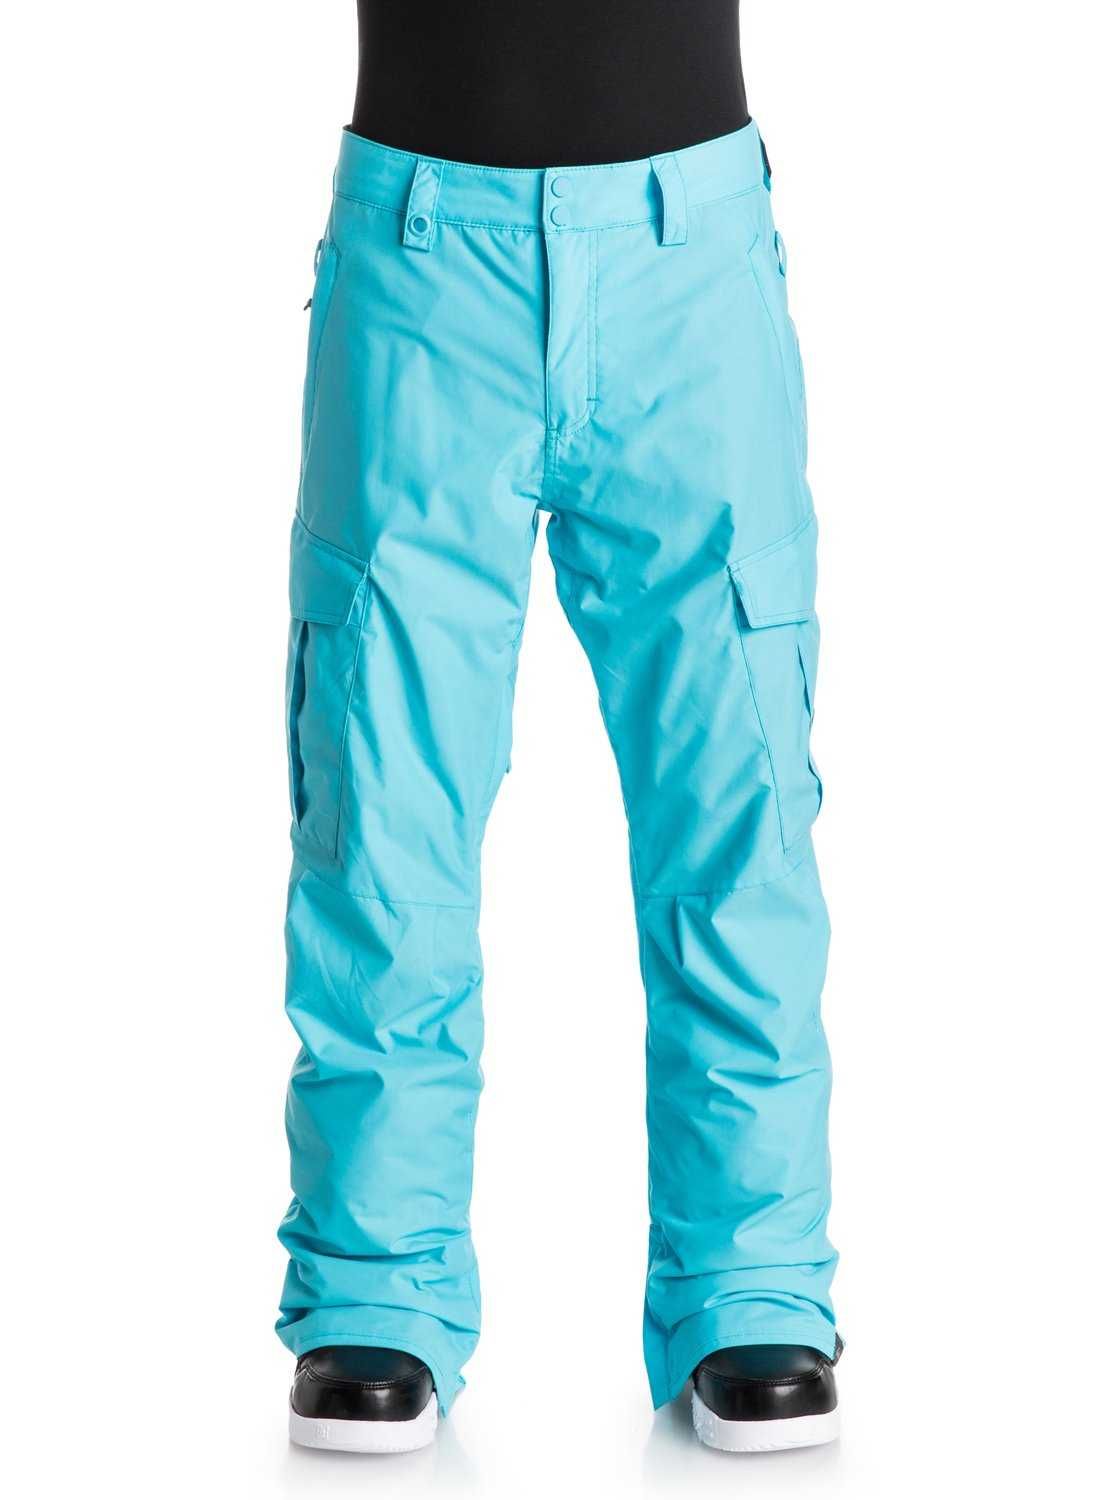 Porter Ins - Pantalon de snow - Blue Fish